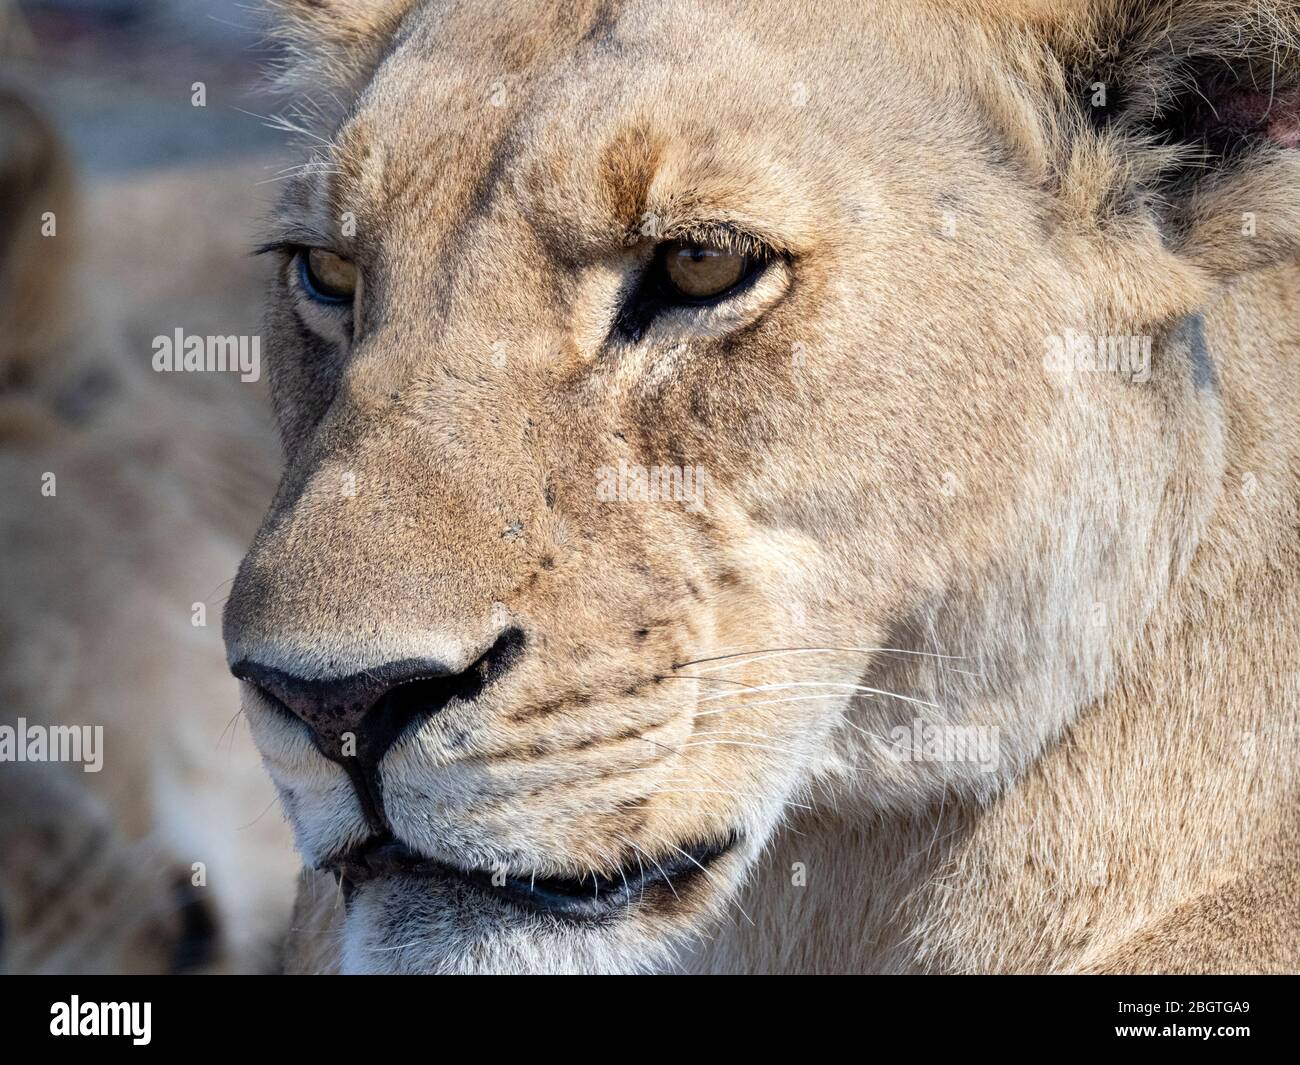 Eine Erwachsene Löwin, Panthera leo, Kopf Detail in Chobe National Park, Botswana, Südafrika. Stockfoto